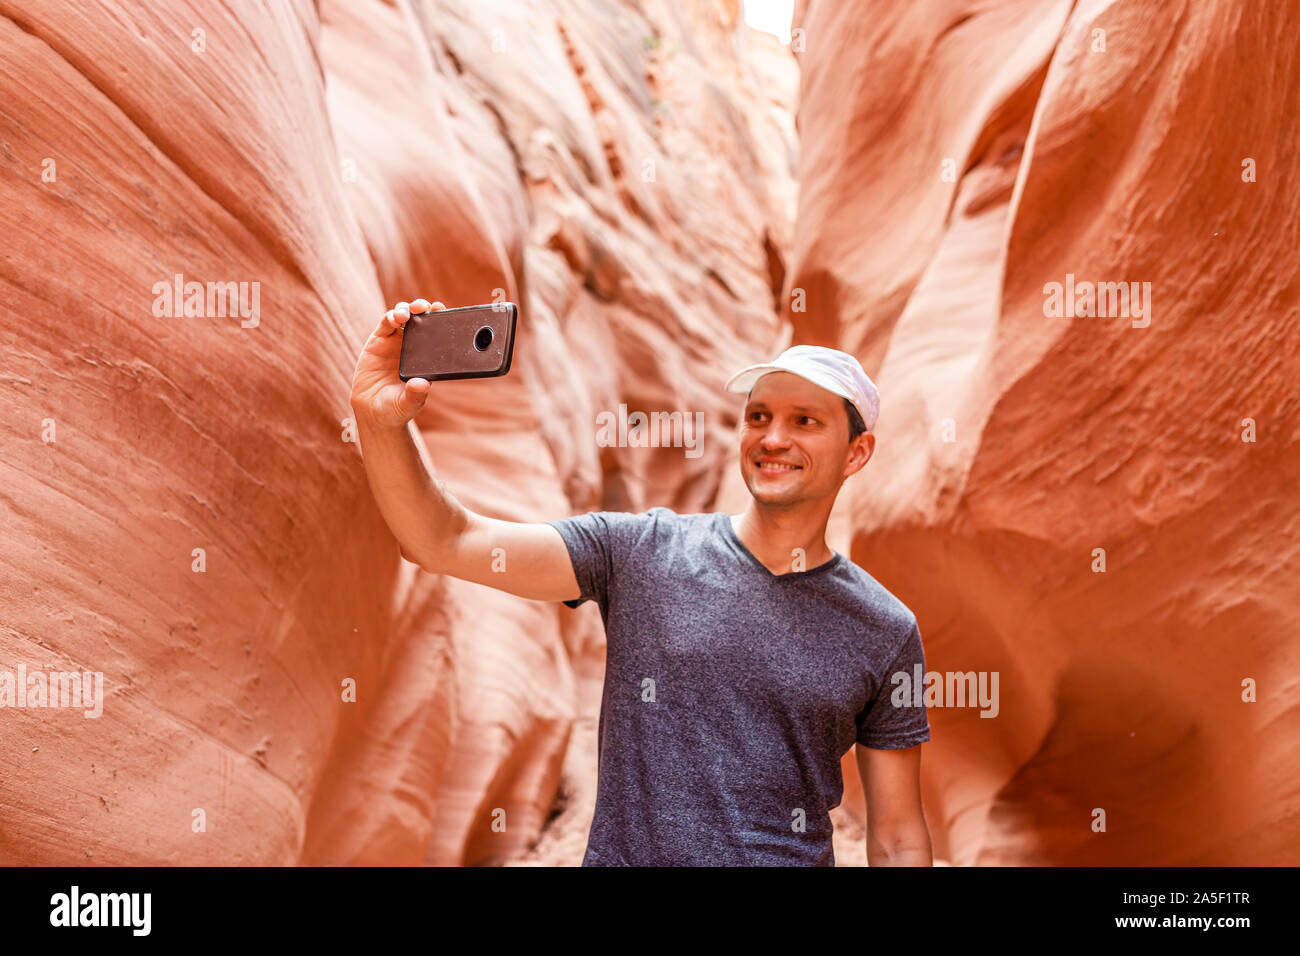 Forma de onda naranja rojo formaciones y hombre tomando selfie fotografía con teléfono en estrecha ranura Antelope Canyon en Arizona en sendero sendero del Lago Powell Foto de stock